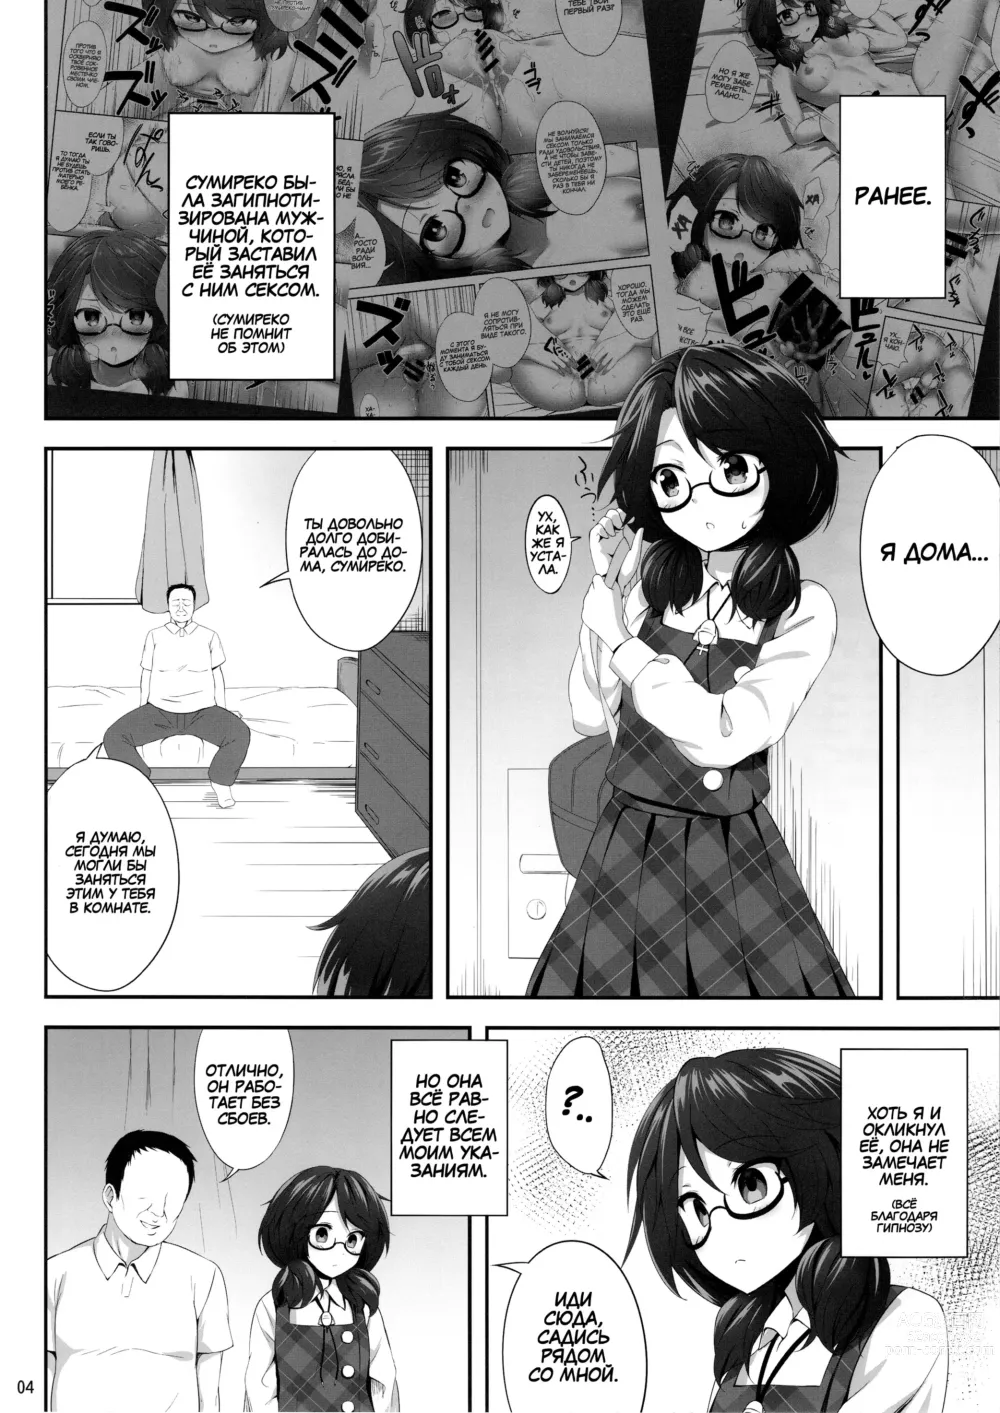 Page 3 of doujinshi Usami Sumireko Saiminbon 2